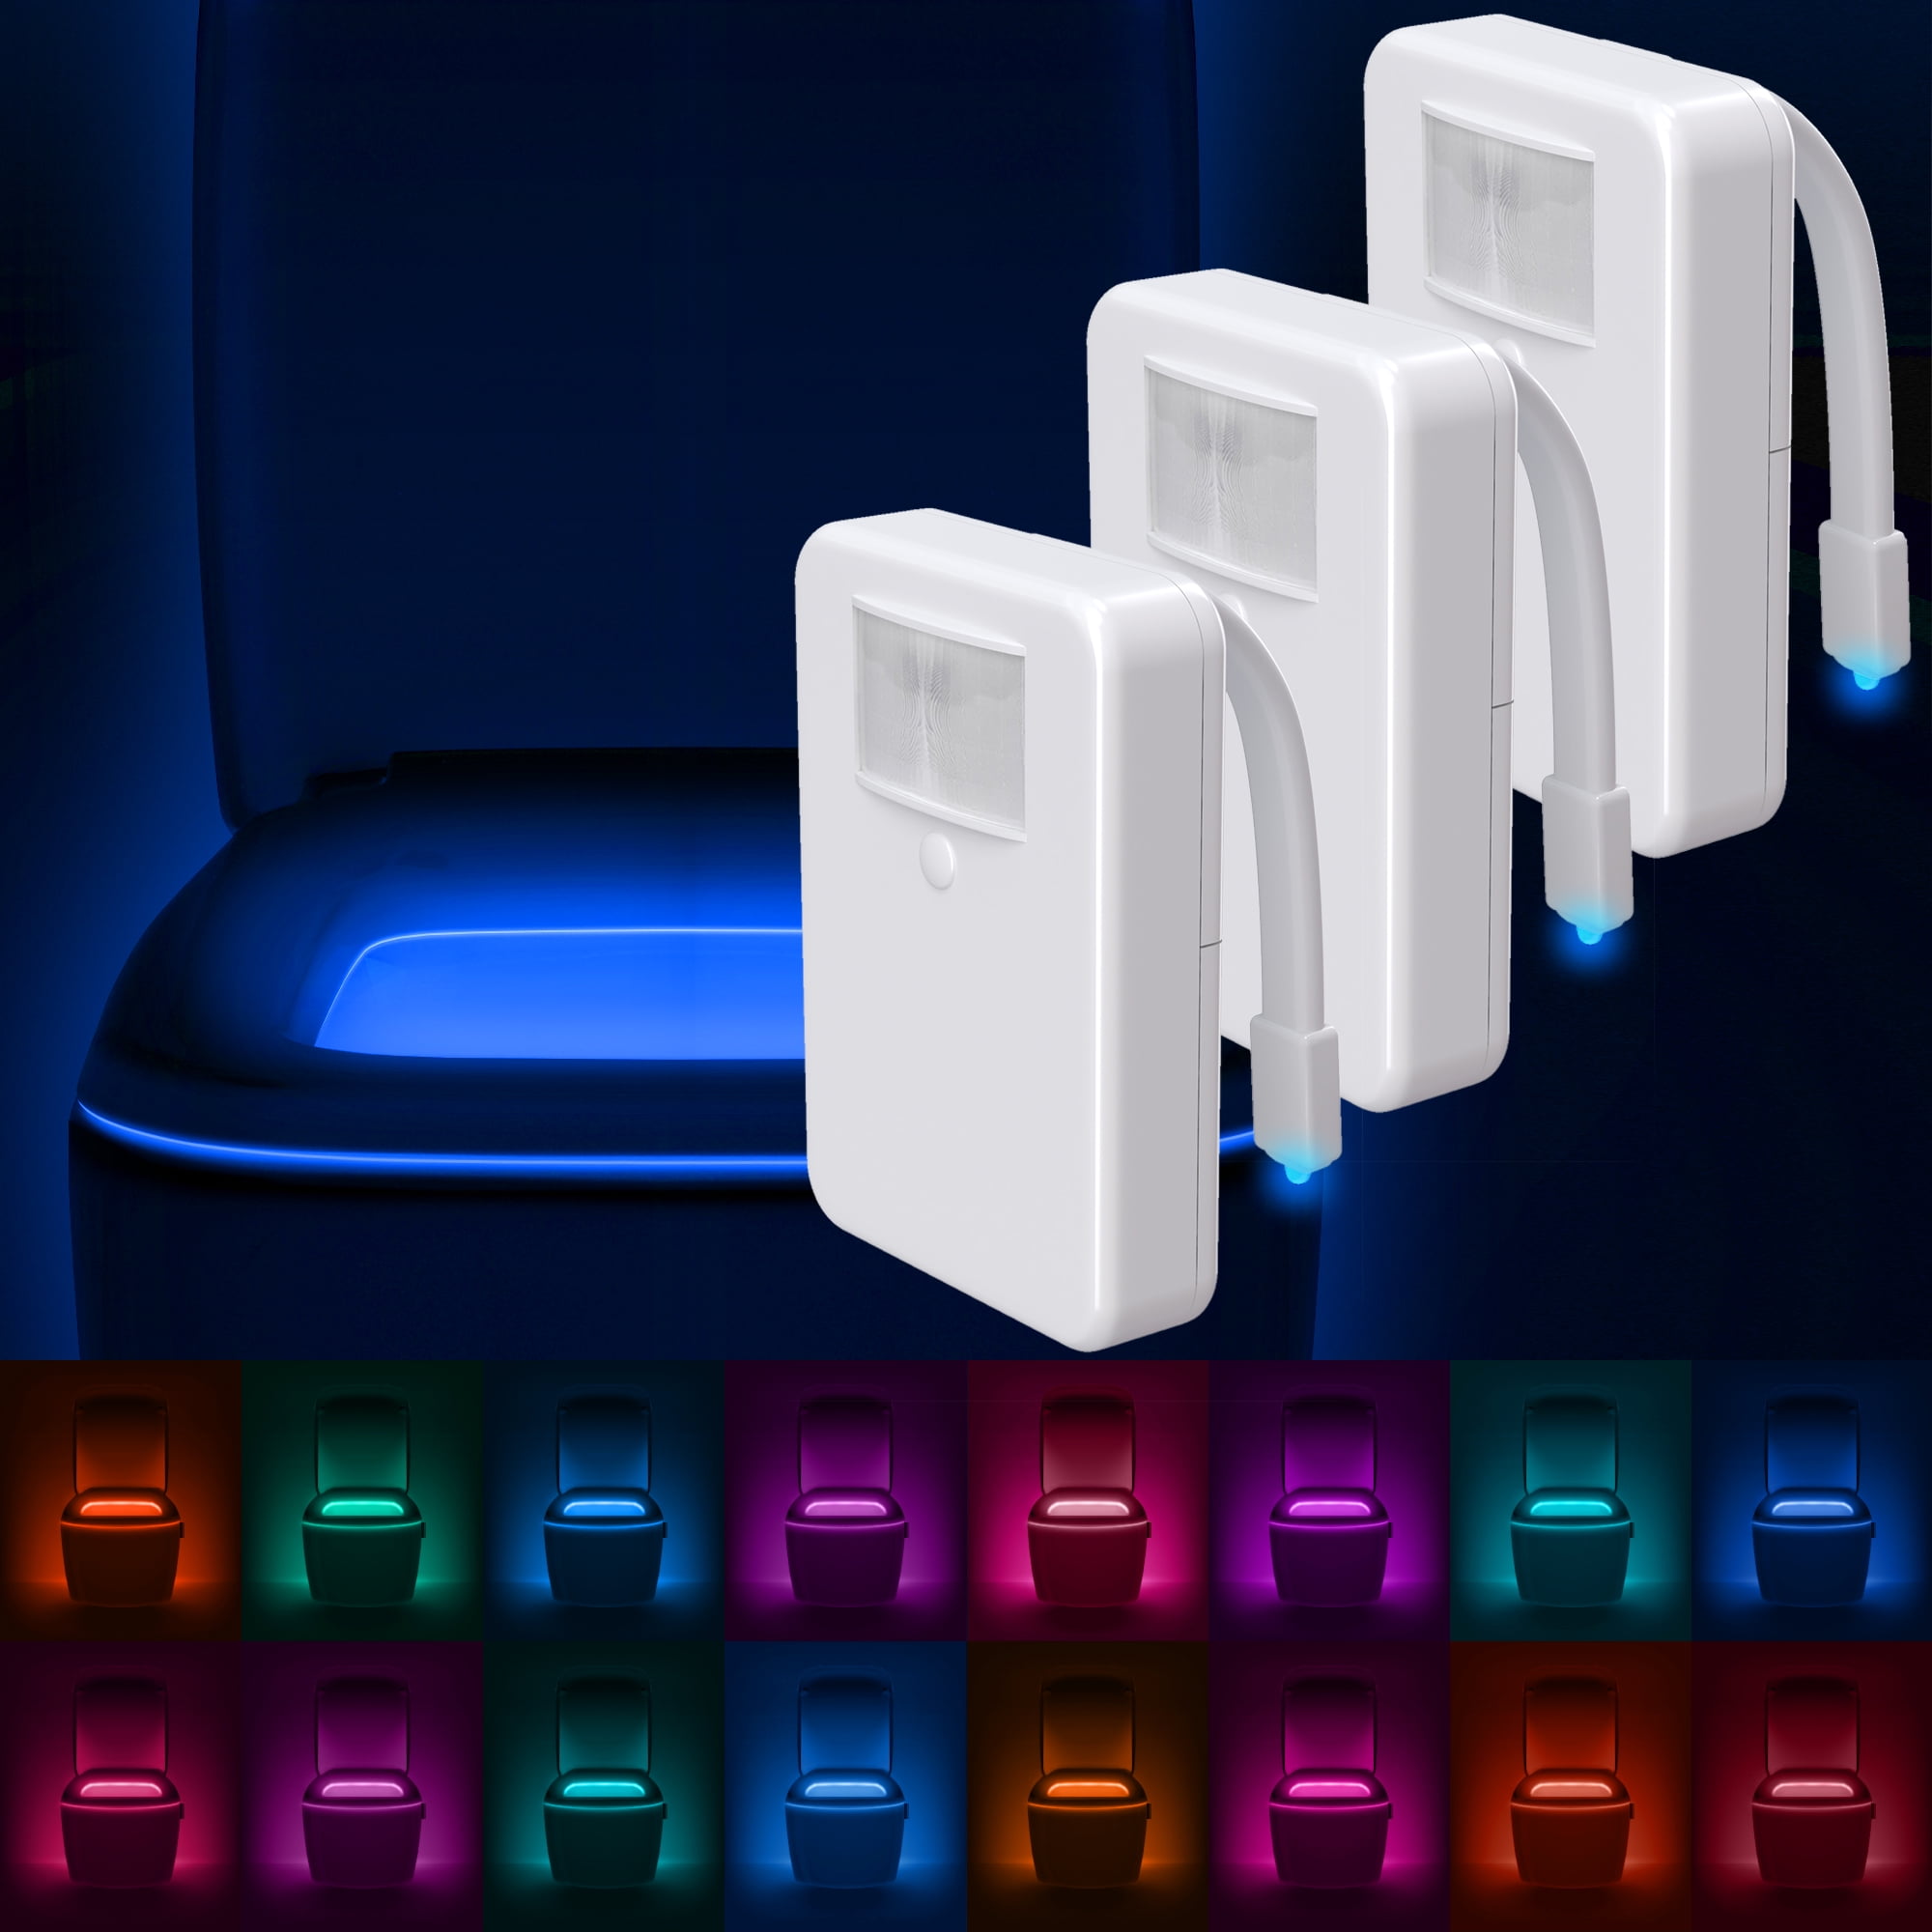 LumiLux Toilet Light Motion Detection, Advanced 16-Color LED